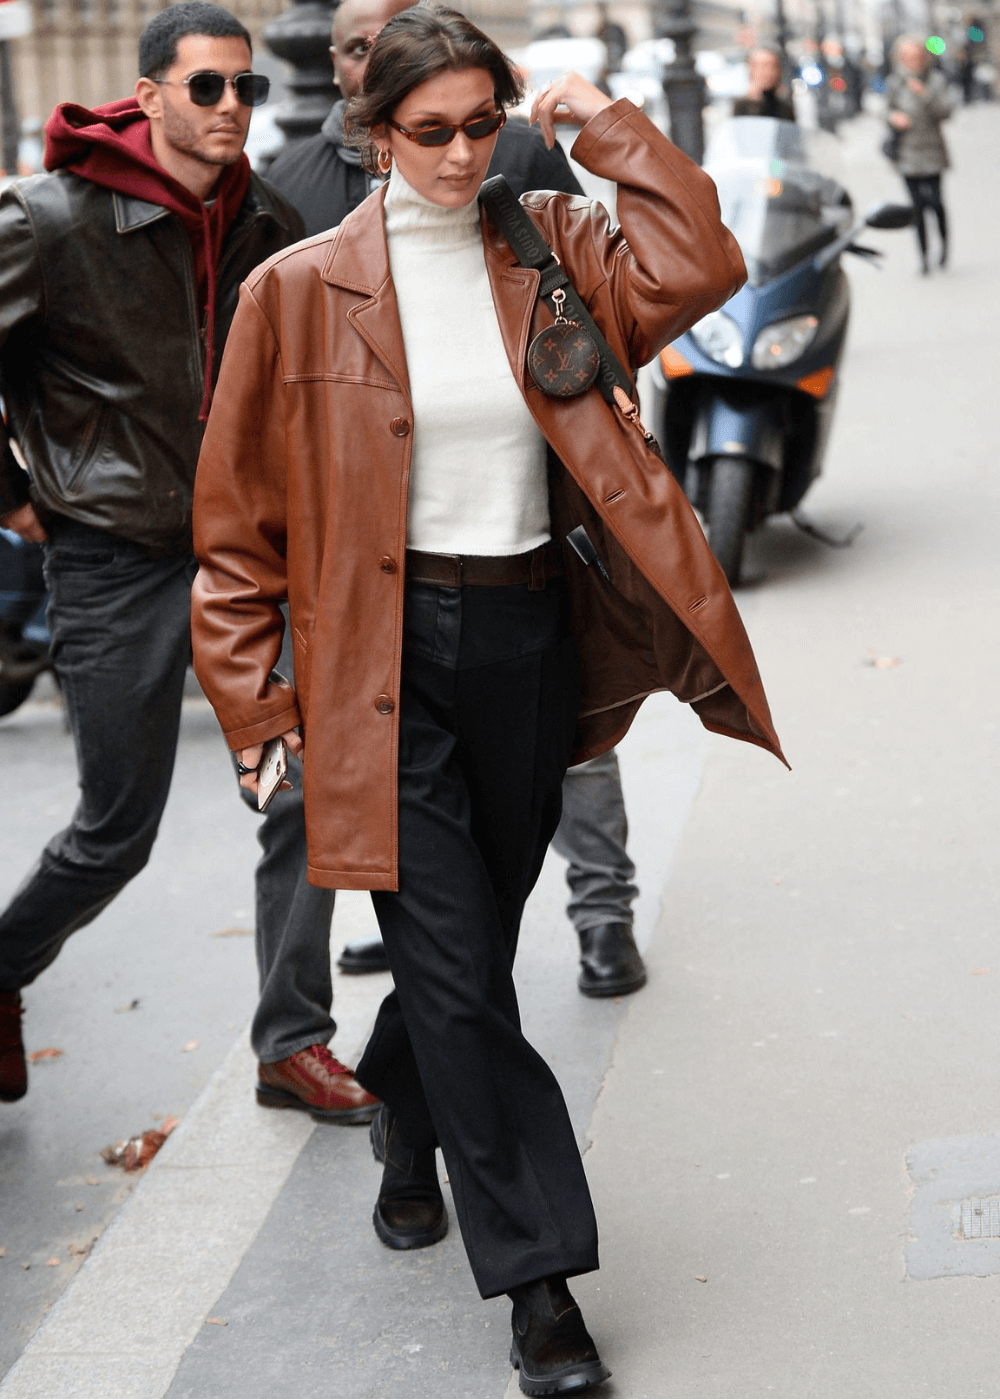 Bella Hadid - calça preta, blusa branca de manga longa, blazer de couro marrom e botas pretas - Bella Hadid - inverno - modelo andando na rua com uma bolsa no ombro e usando óculos escuros - https://stealthelook.com.br